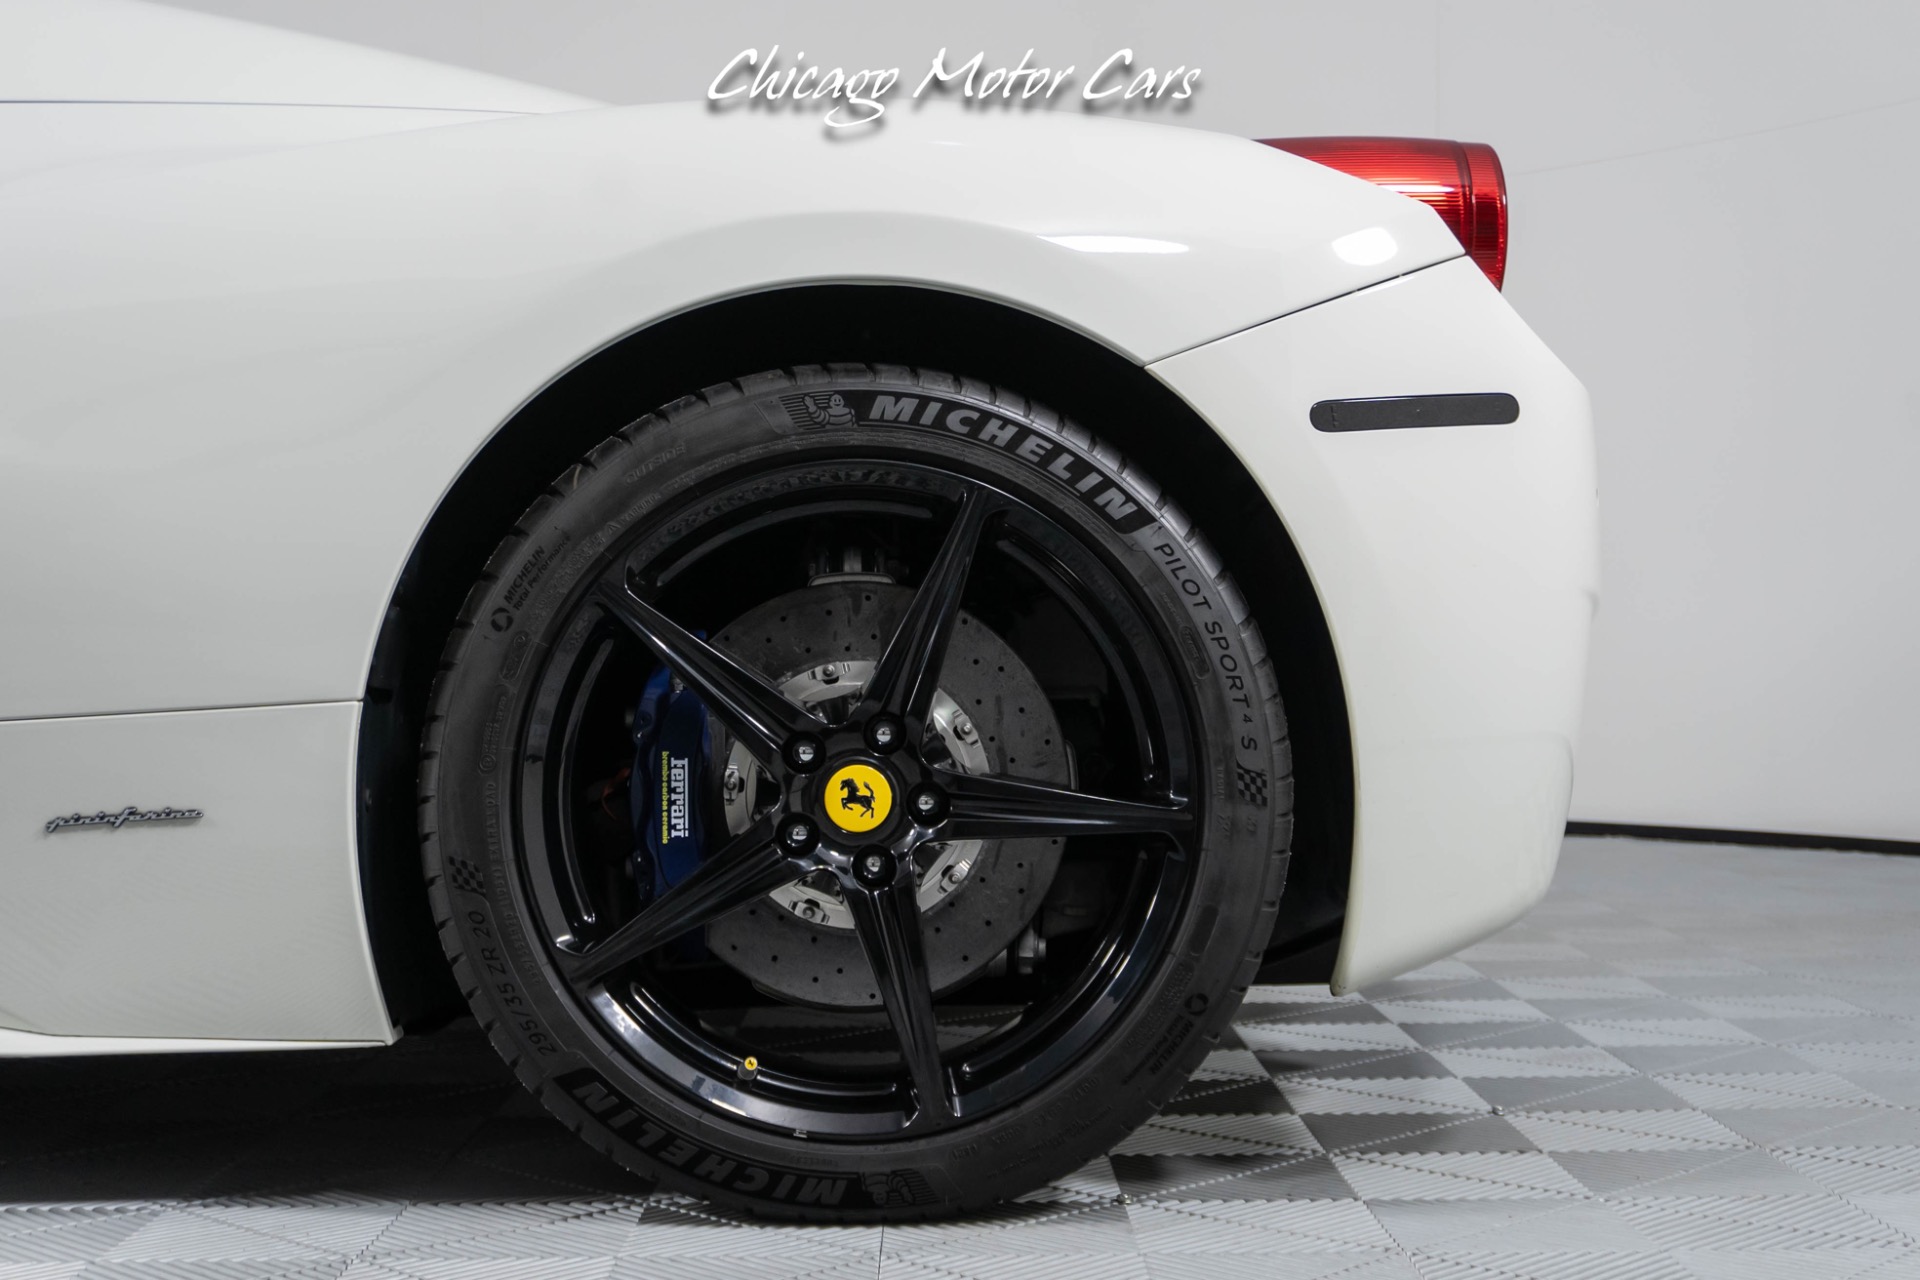 Used-2015-Ferrari-458-Spider-Convertible-1of1-Spec-Full-Carbon-Fiber-Interior-Blue-Seats